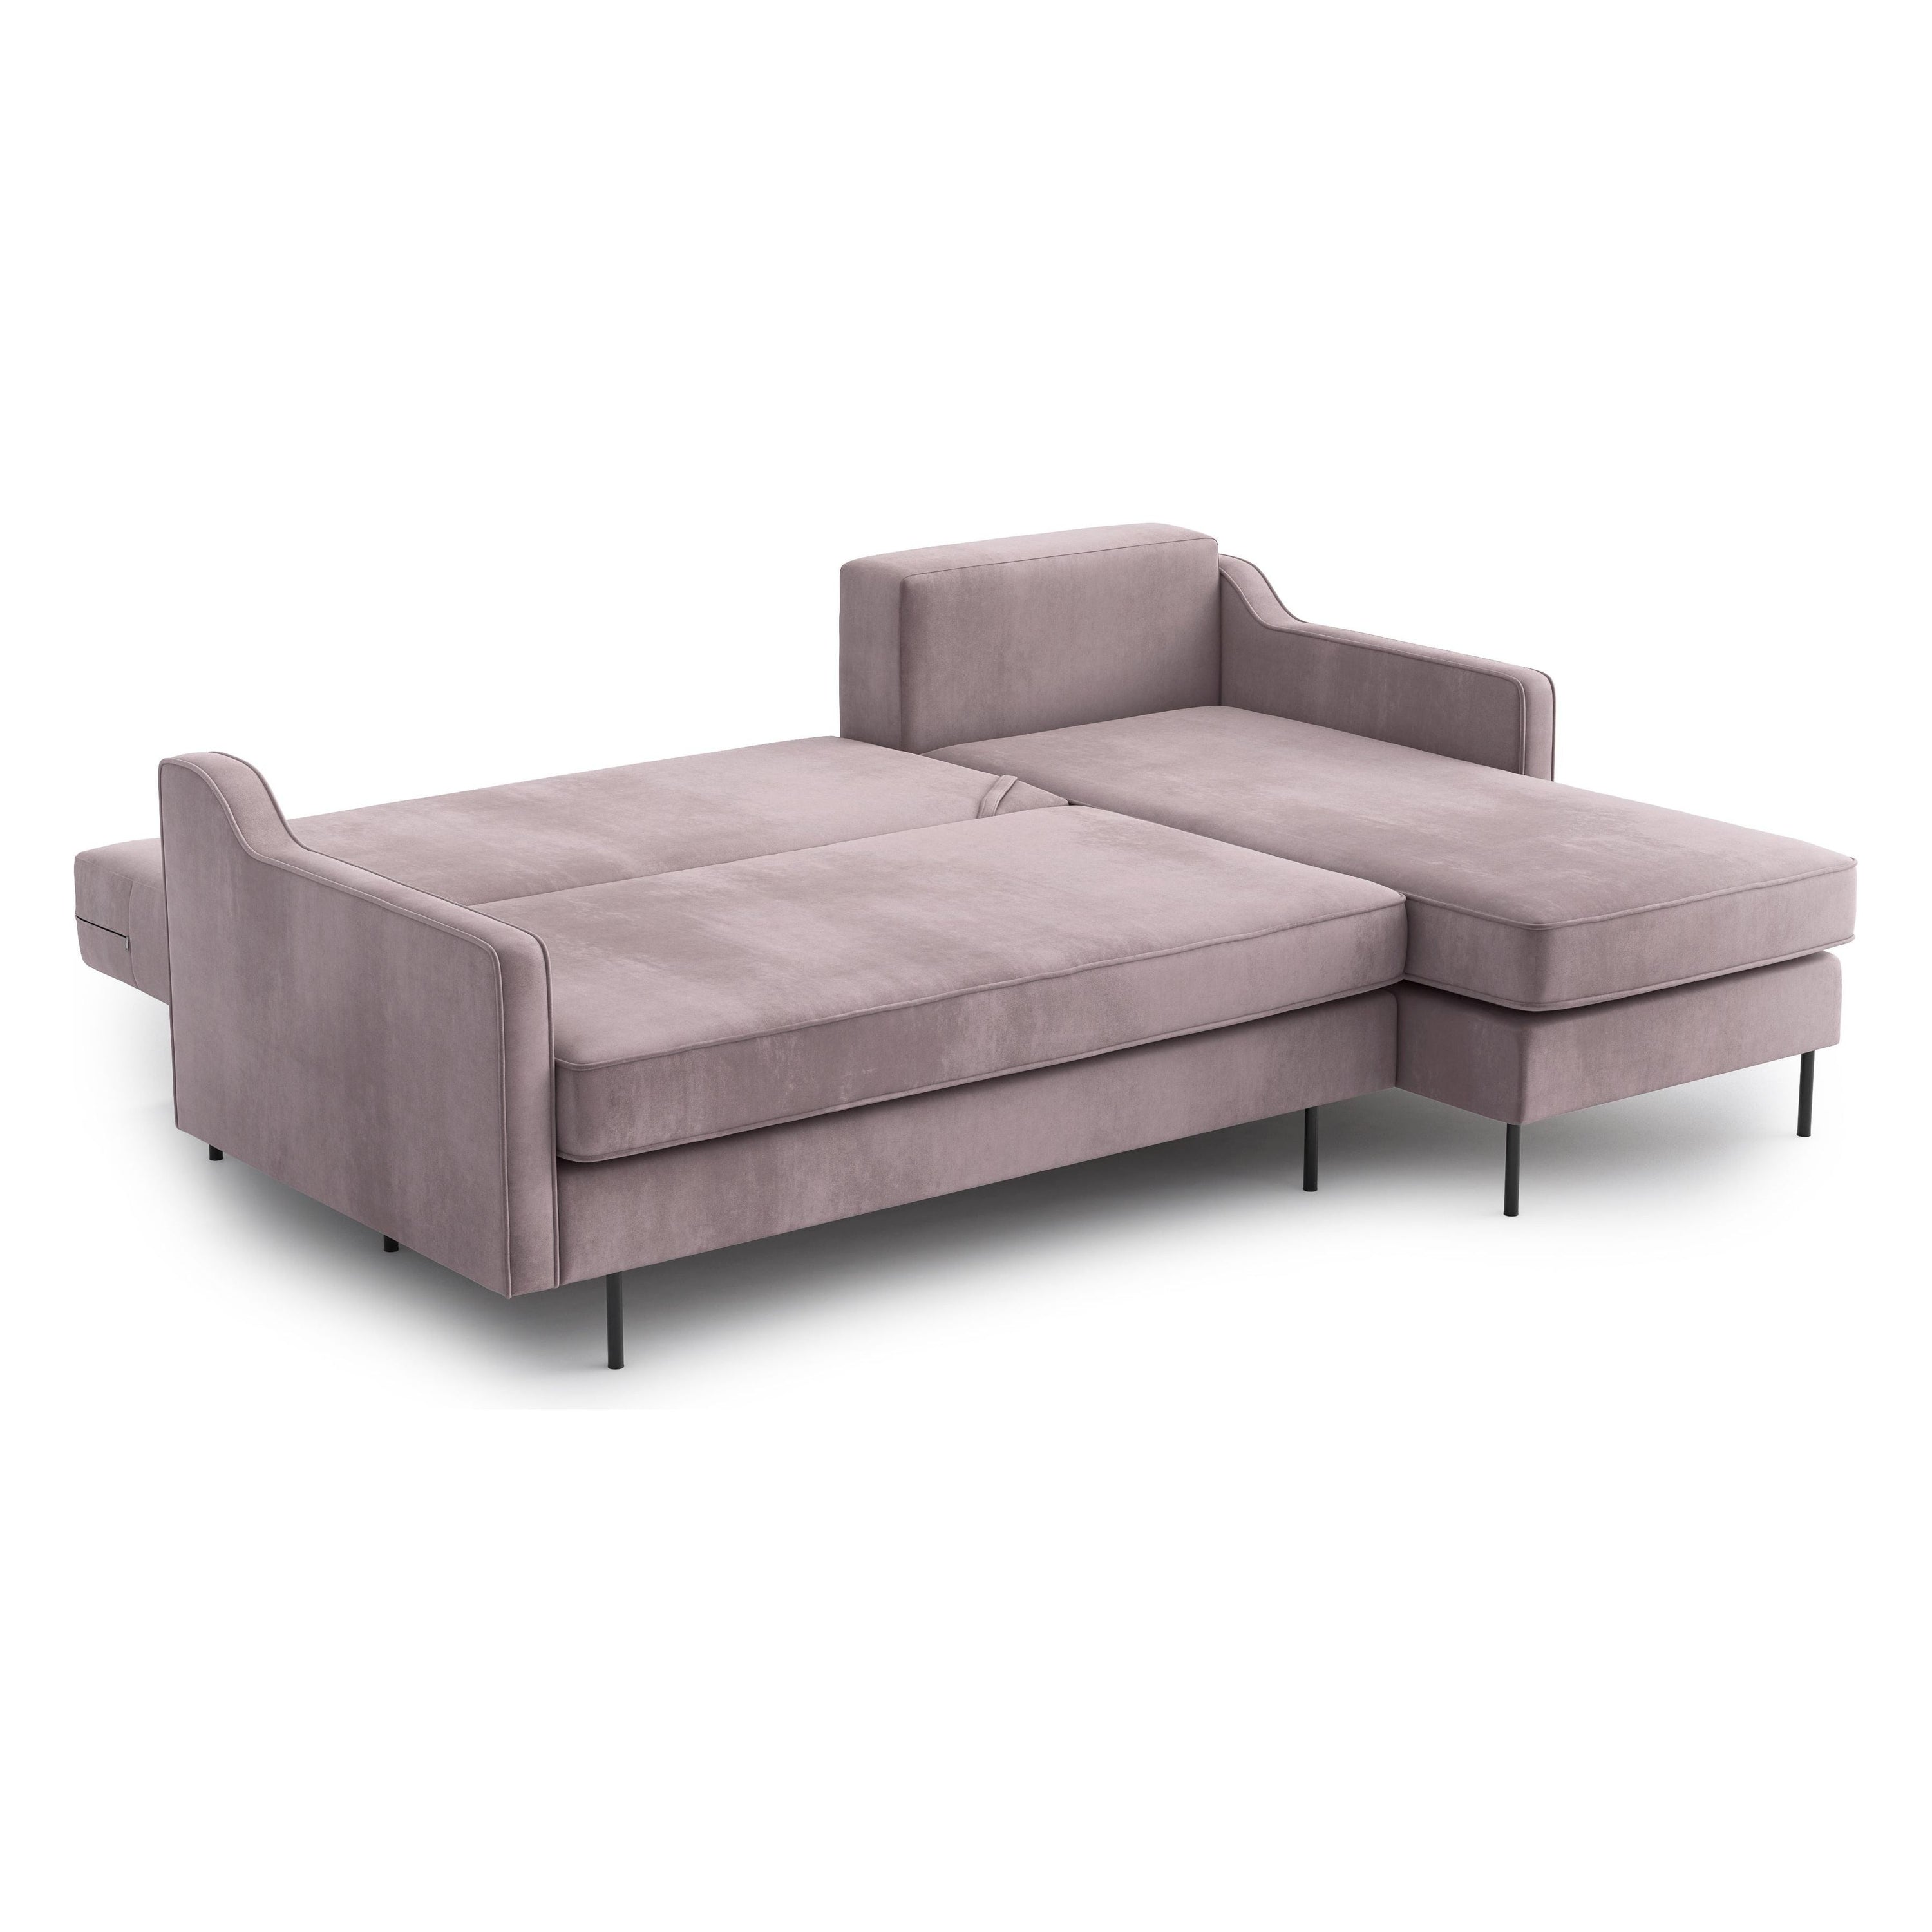 ABBE kampinė sofa lova, keičiamo kampo, levandų spalva